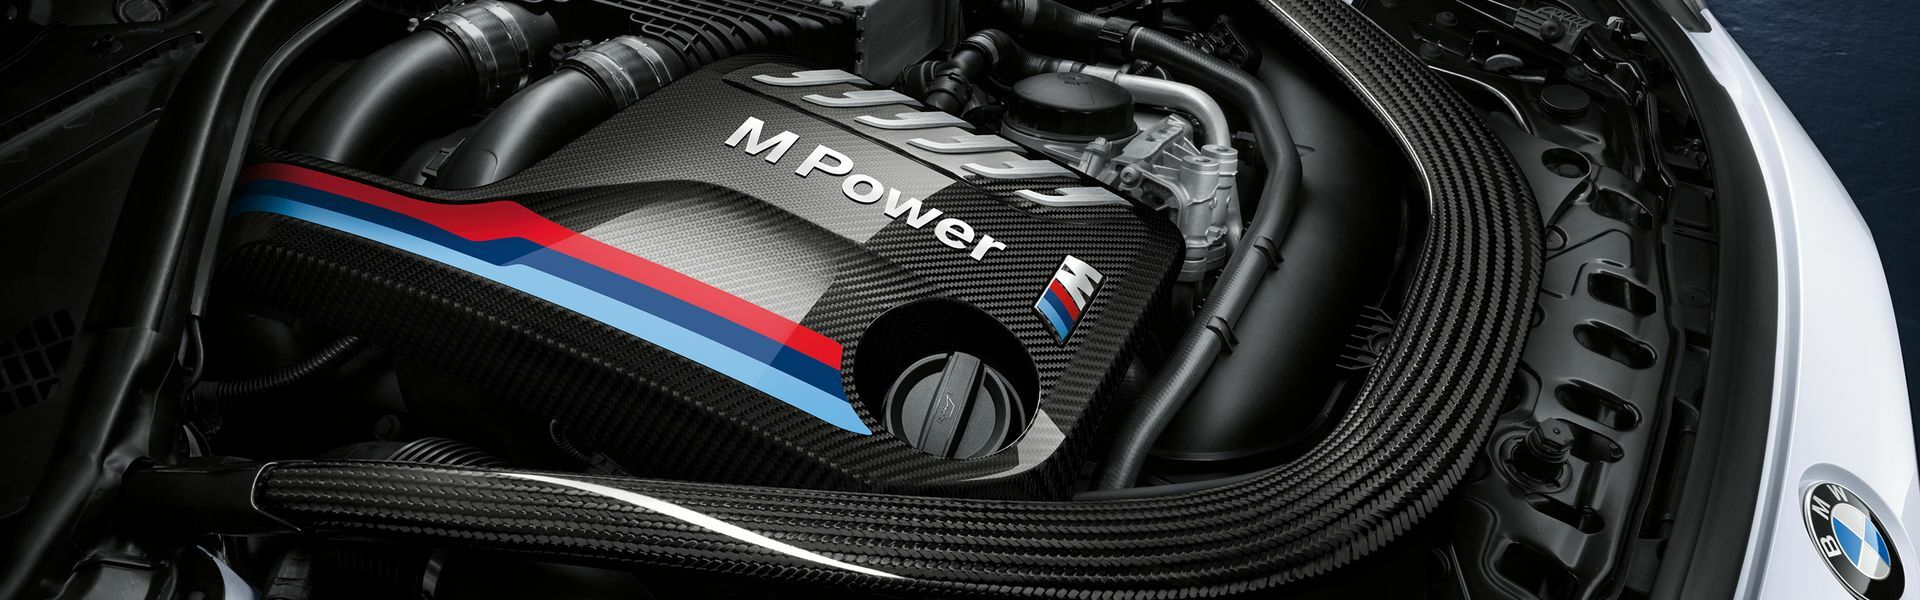 Zvýšení výkonu/ Softwarové úpravy/ Drobné performance díly pro automobil Porsche Panamera 4 E